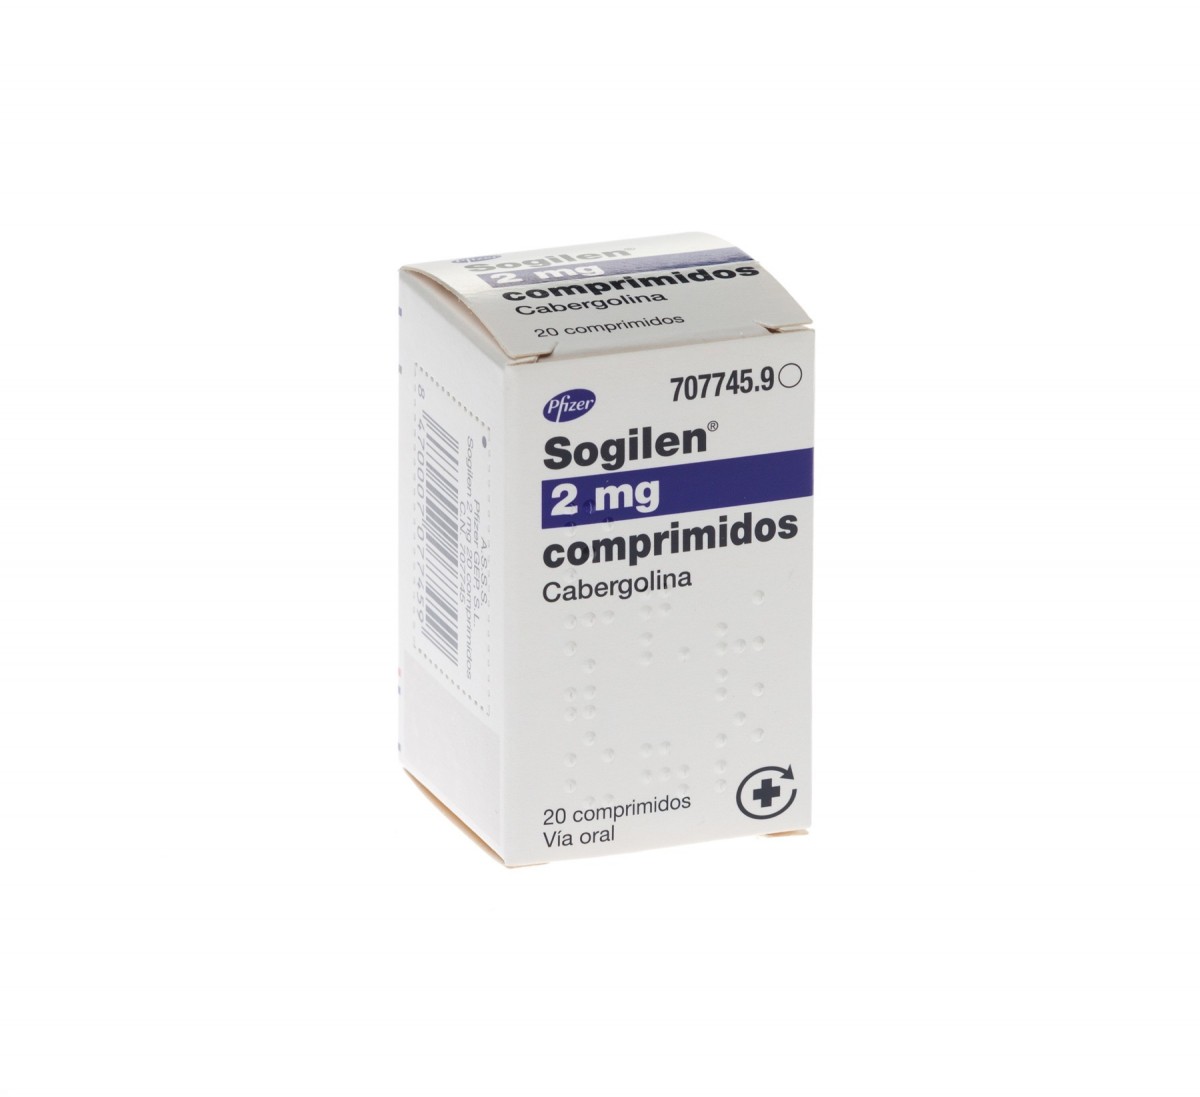 SOGILEN  2 mg COMPRIMIDOS , 20 comprimidos fotografía del envase.